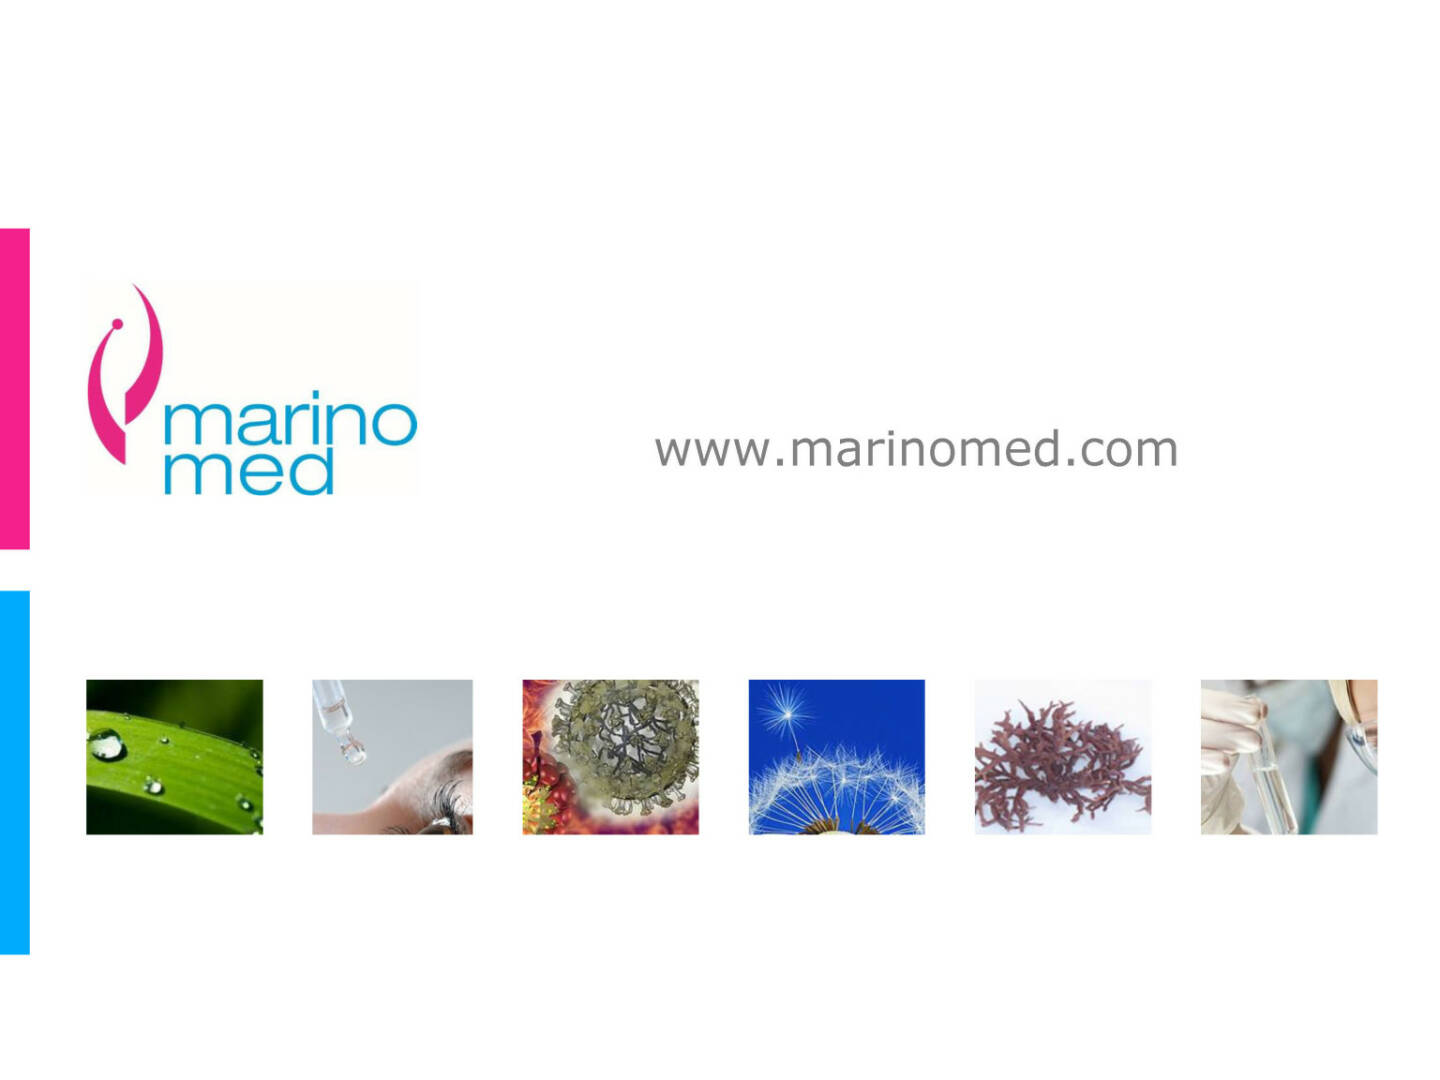 Marinomed - www.marinomed.com